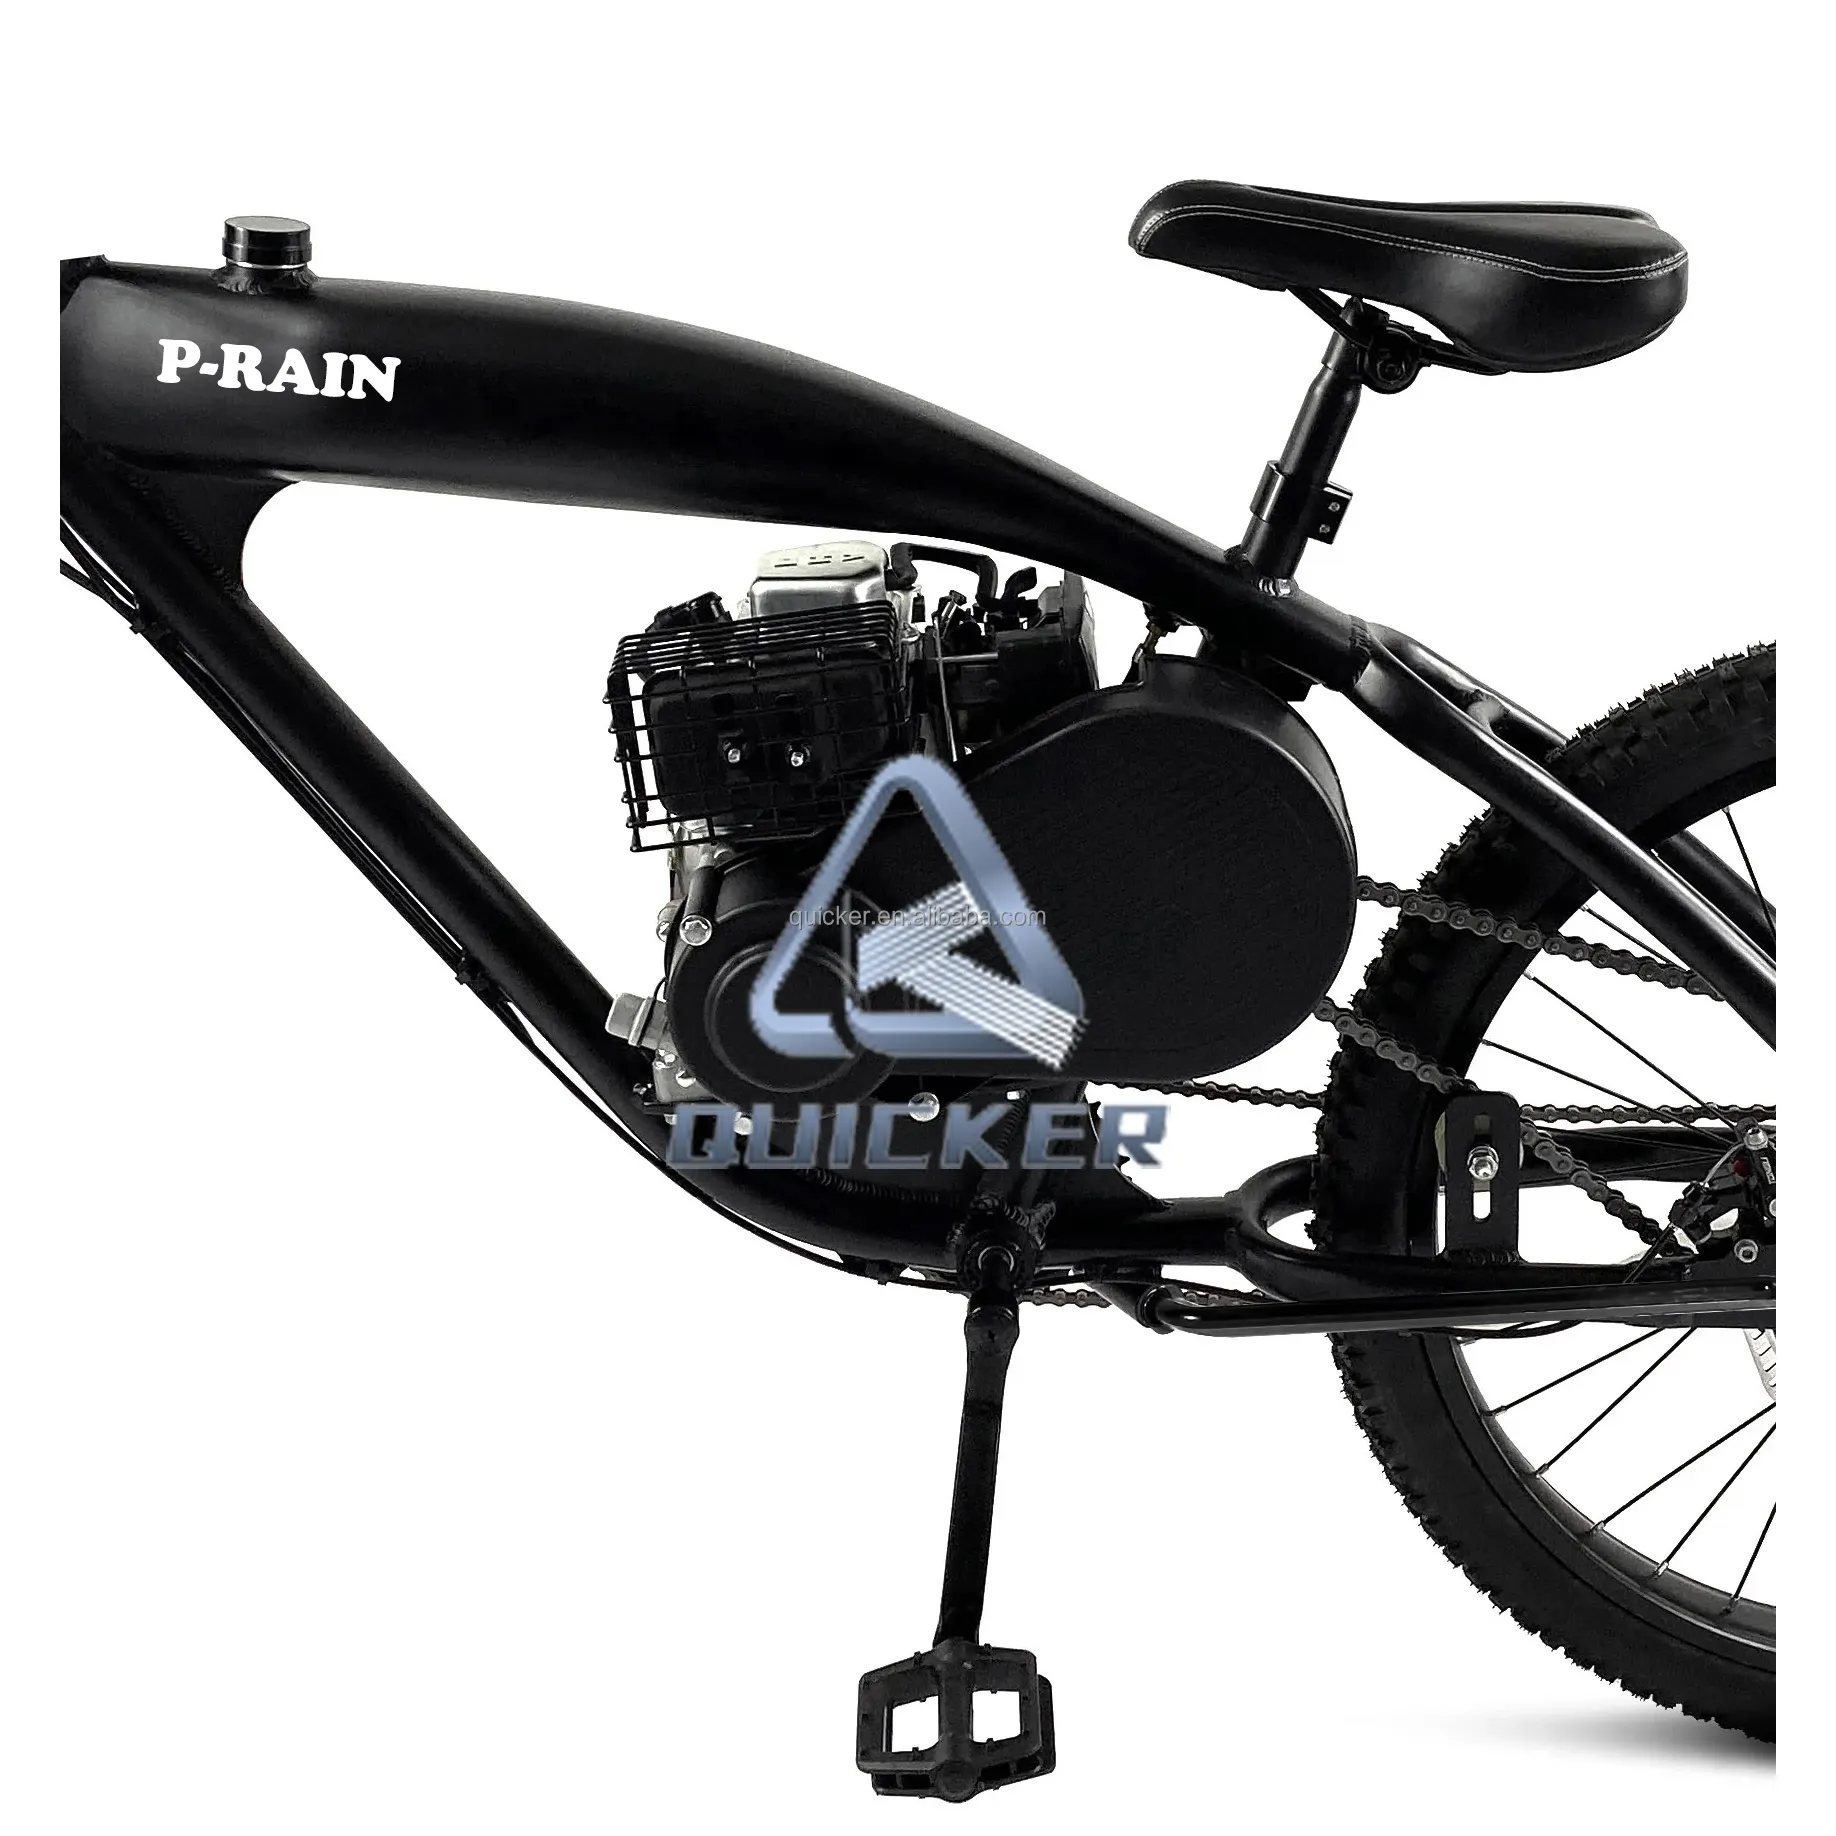 Bicicletta completa motorizzata 4 tempi Lifan 79cc OHV motore benzina bicicletta ciclomotore 2 tempi 80cc bici